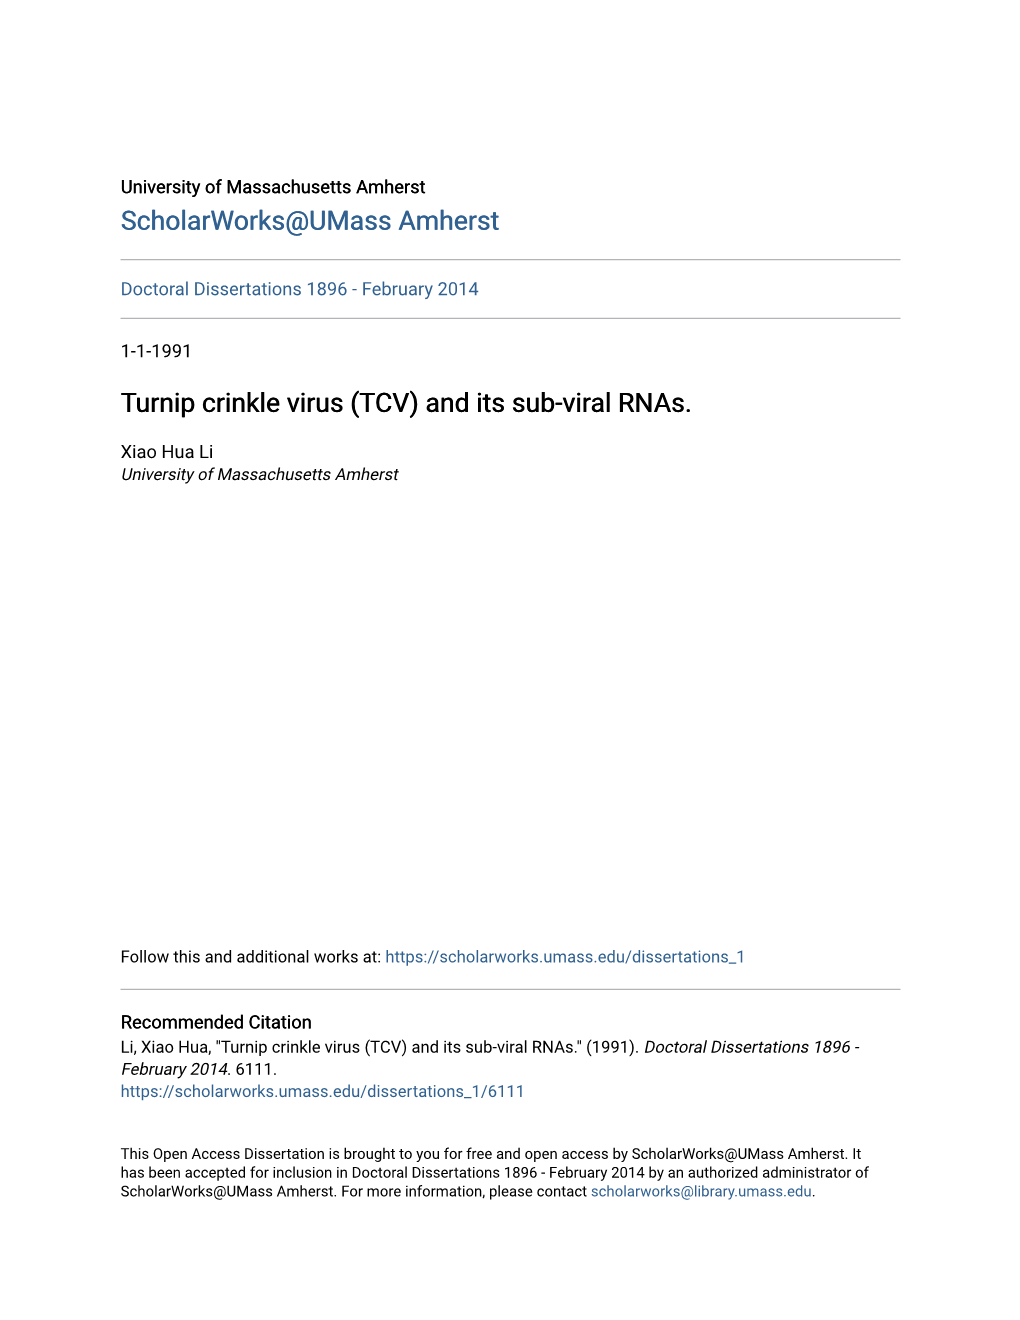 Turnip Crinkle Virus (TCV) and Its Sub-Viral Rnas